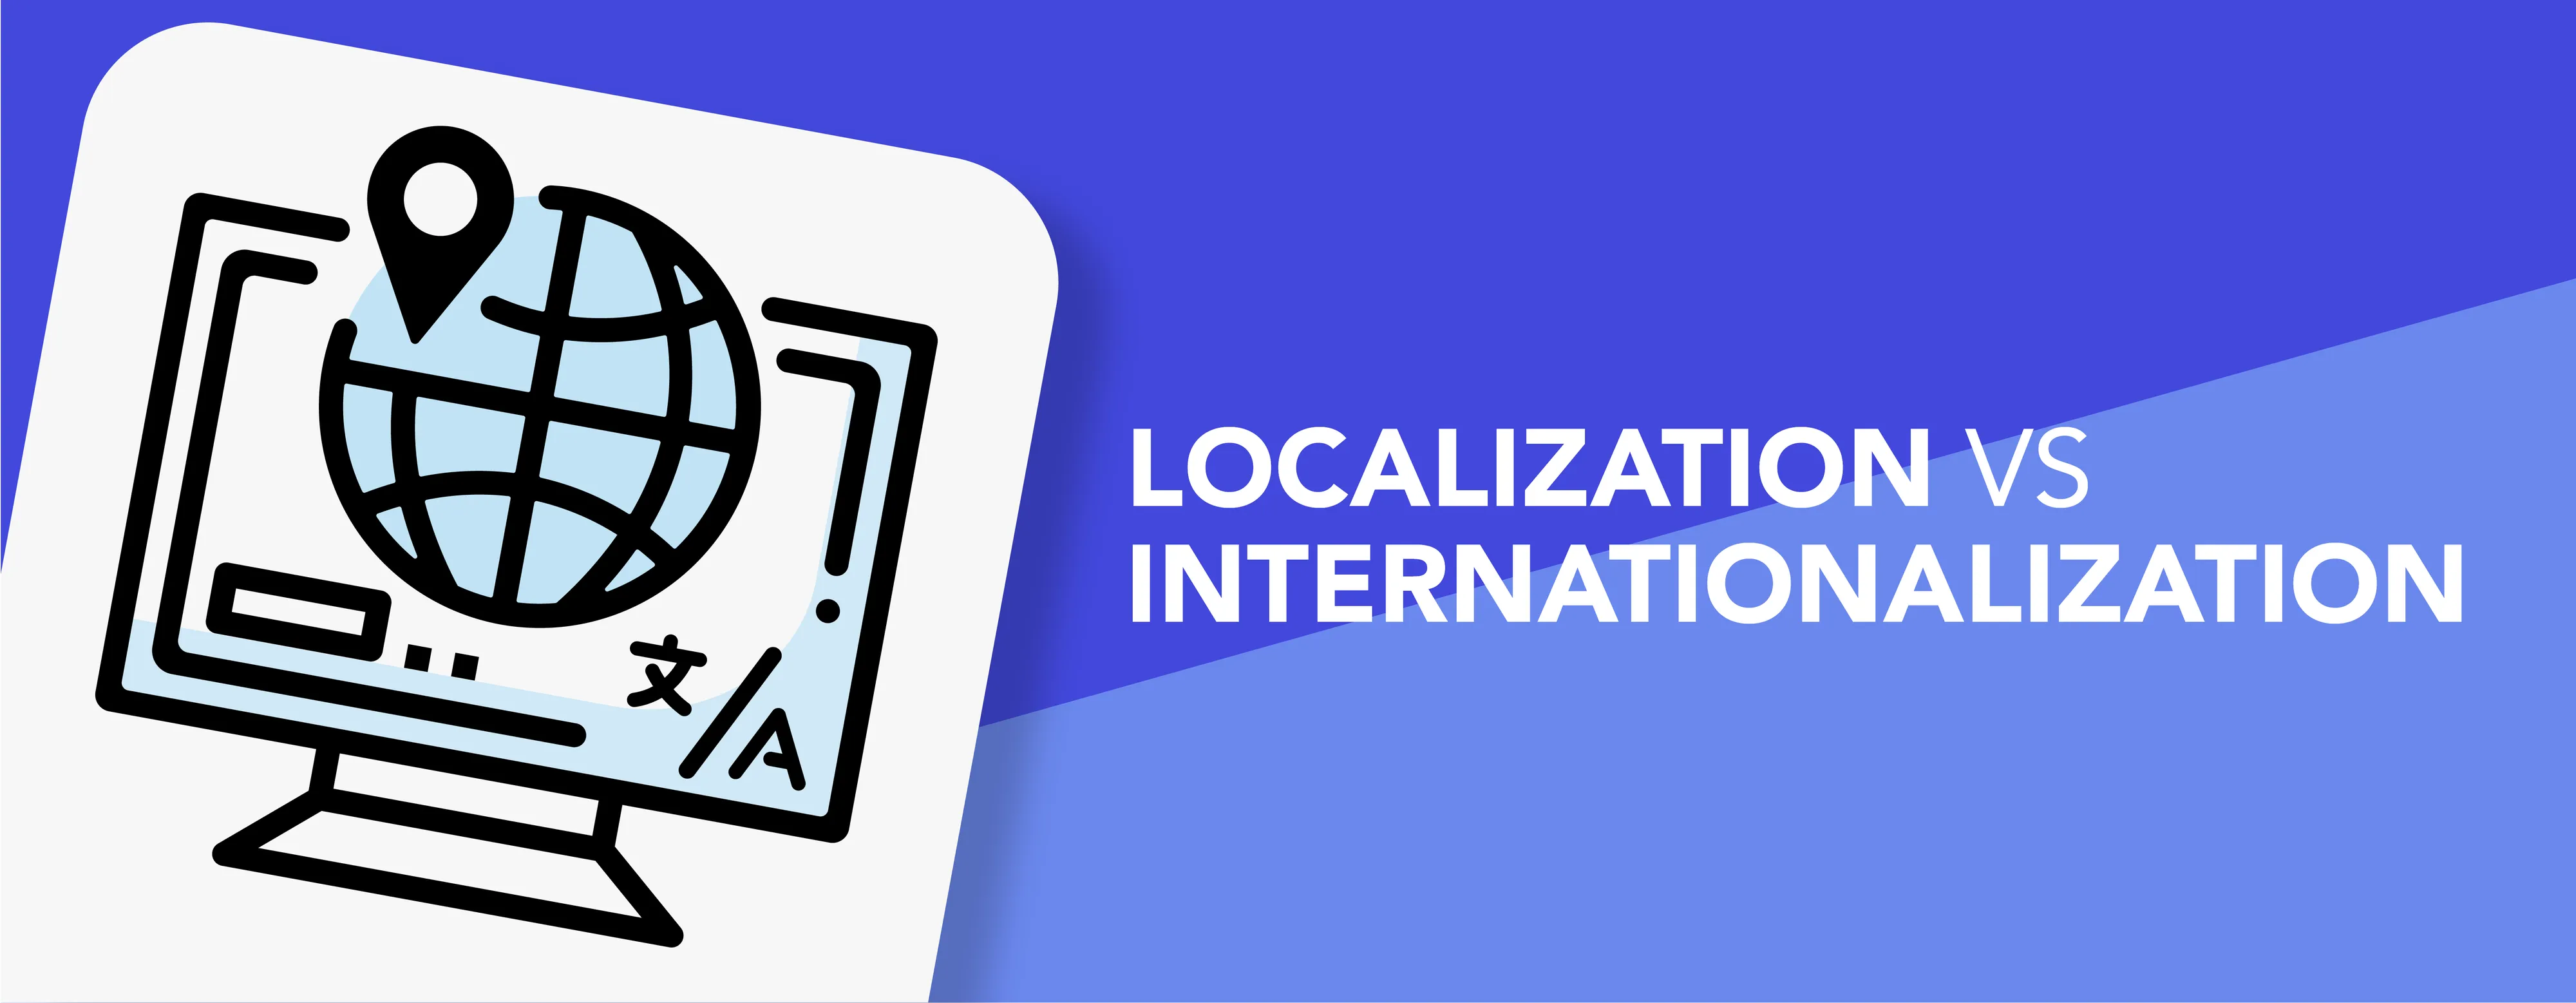 localization and internationalization